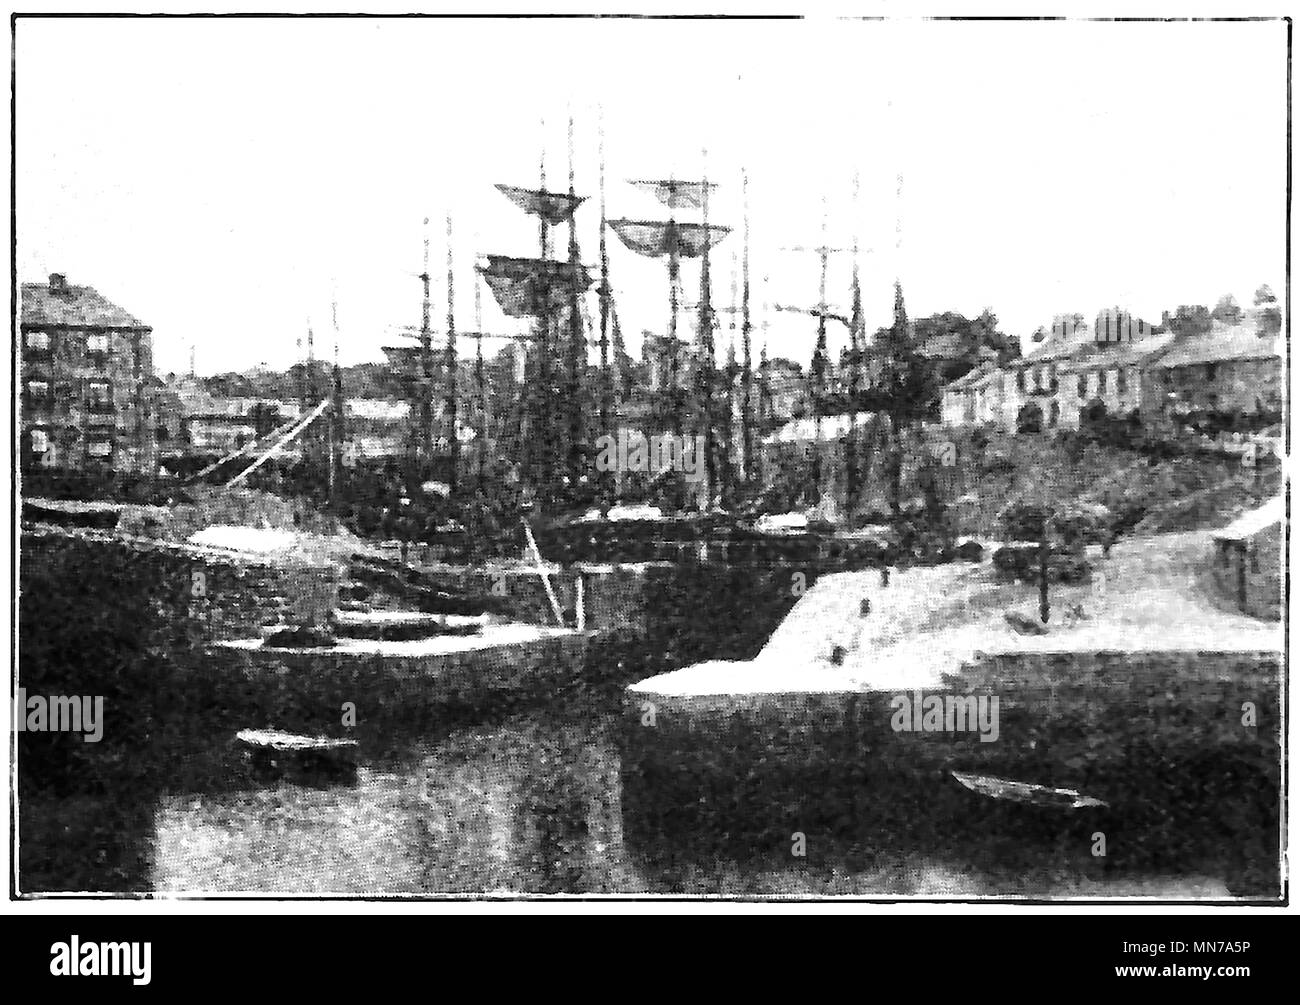 1914 Foto von Segelschiffen hinter einem Dock mit Wasser Tore geschlossen, evtl. in Charlestown, Cornwall, Großbritannien Stockfoto